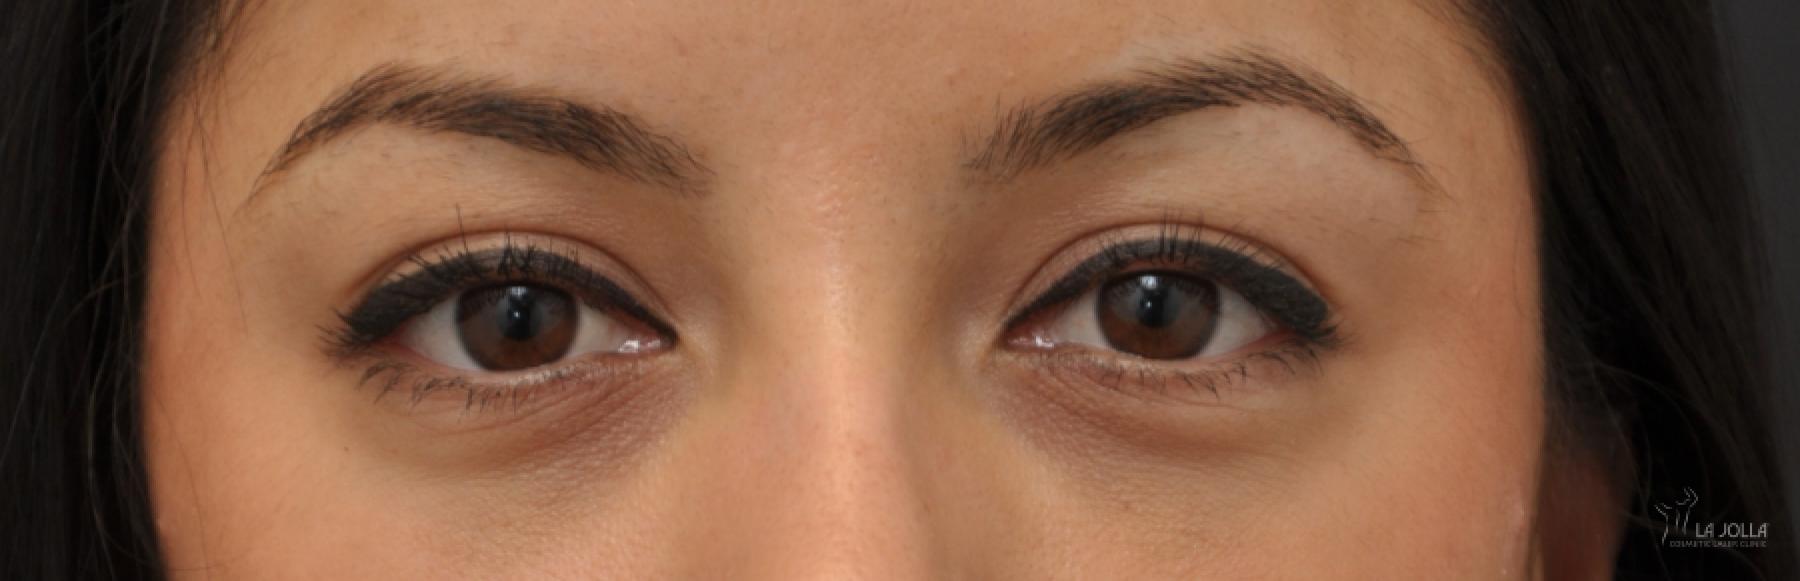 Under Eye Filler: Patient 4 - After  